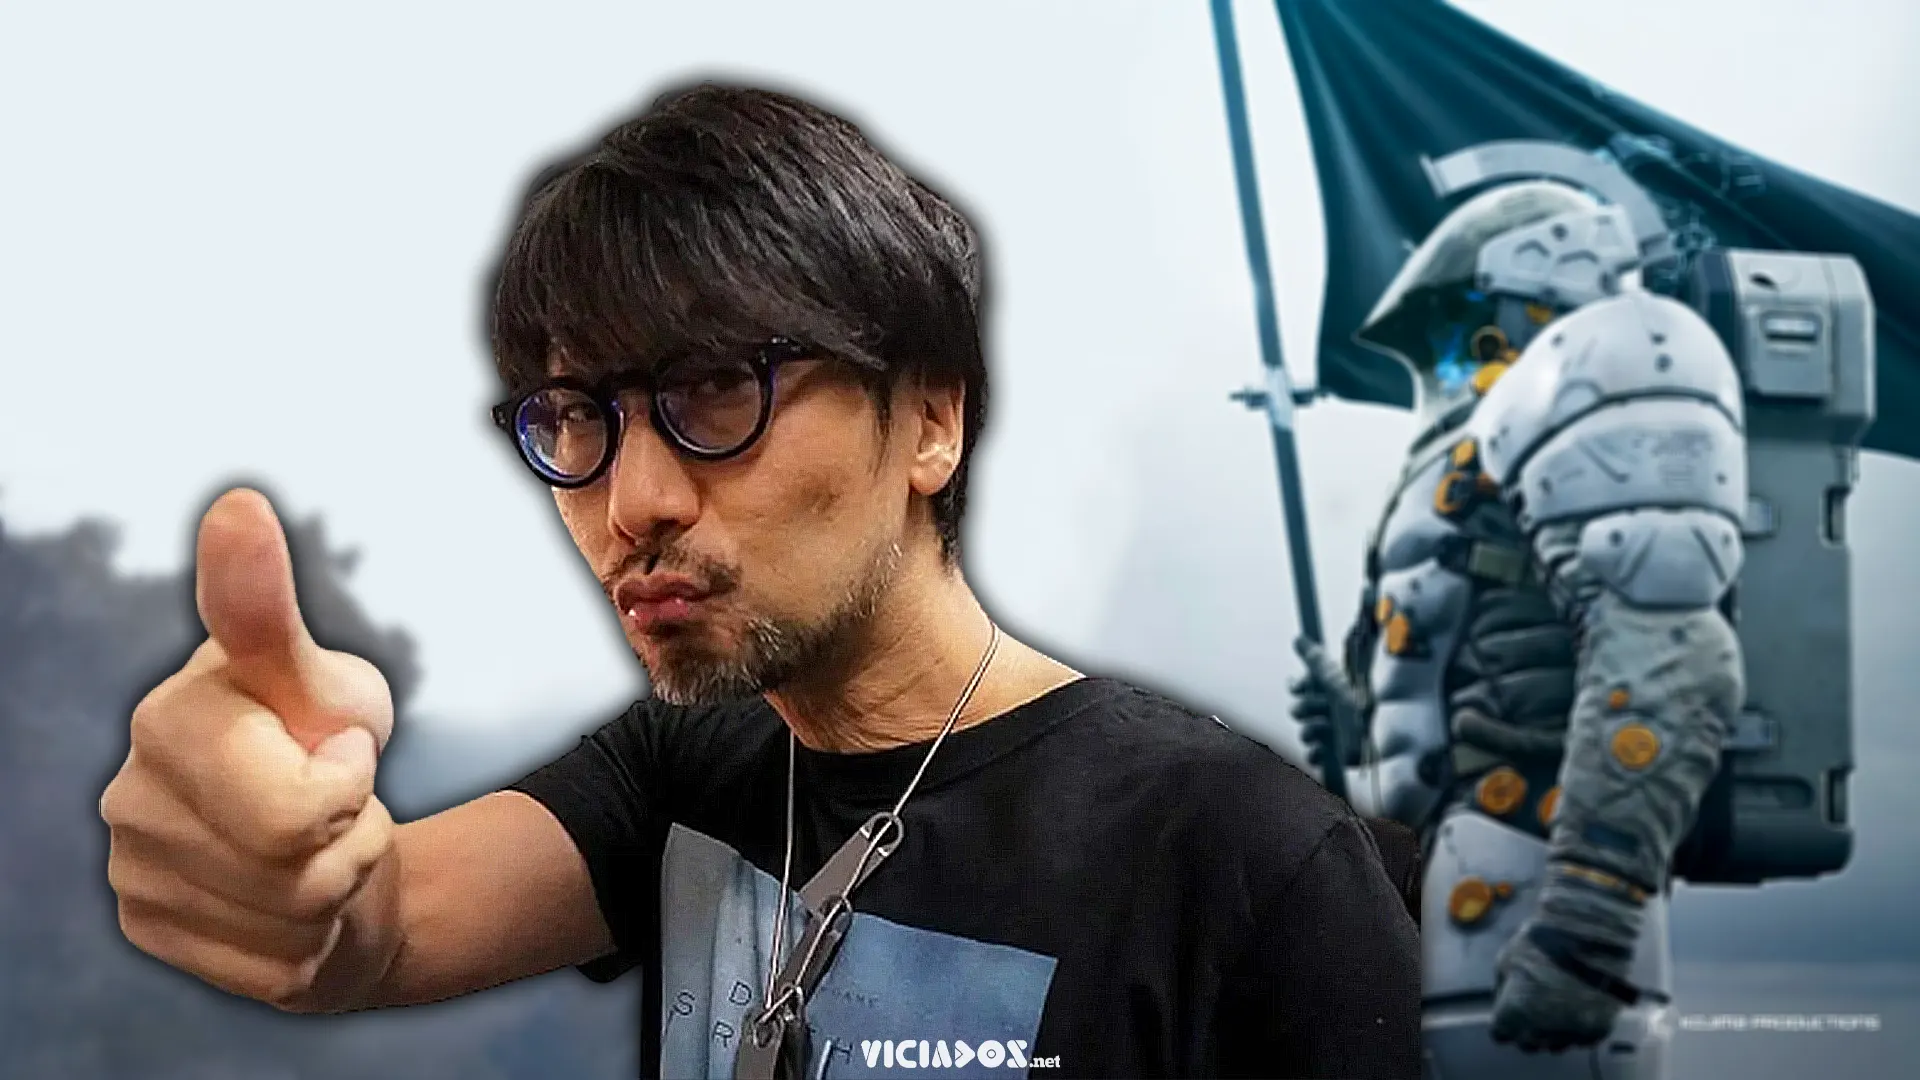 Aquisição da Sony é maior que estúdio de Kojima; Confirma famoso jornalista! 2022 Viciados